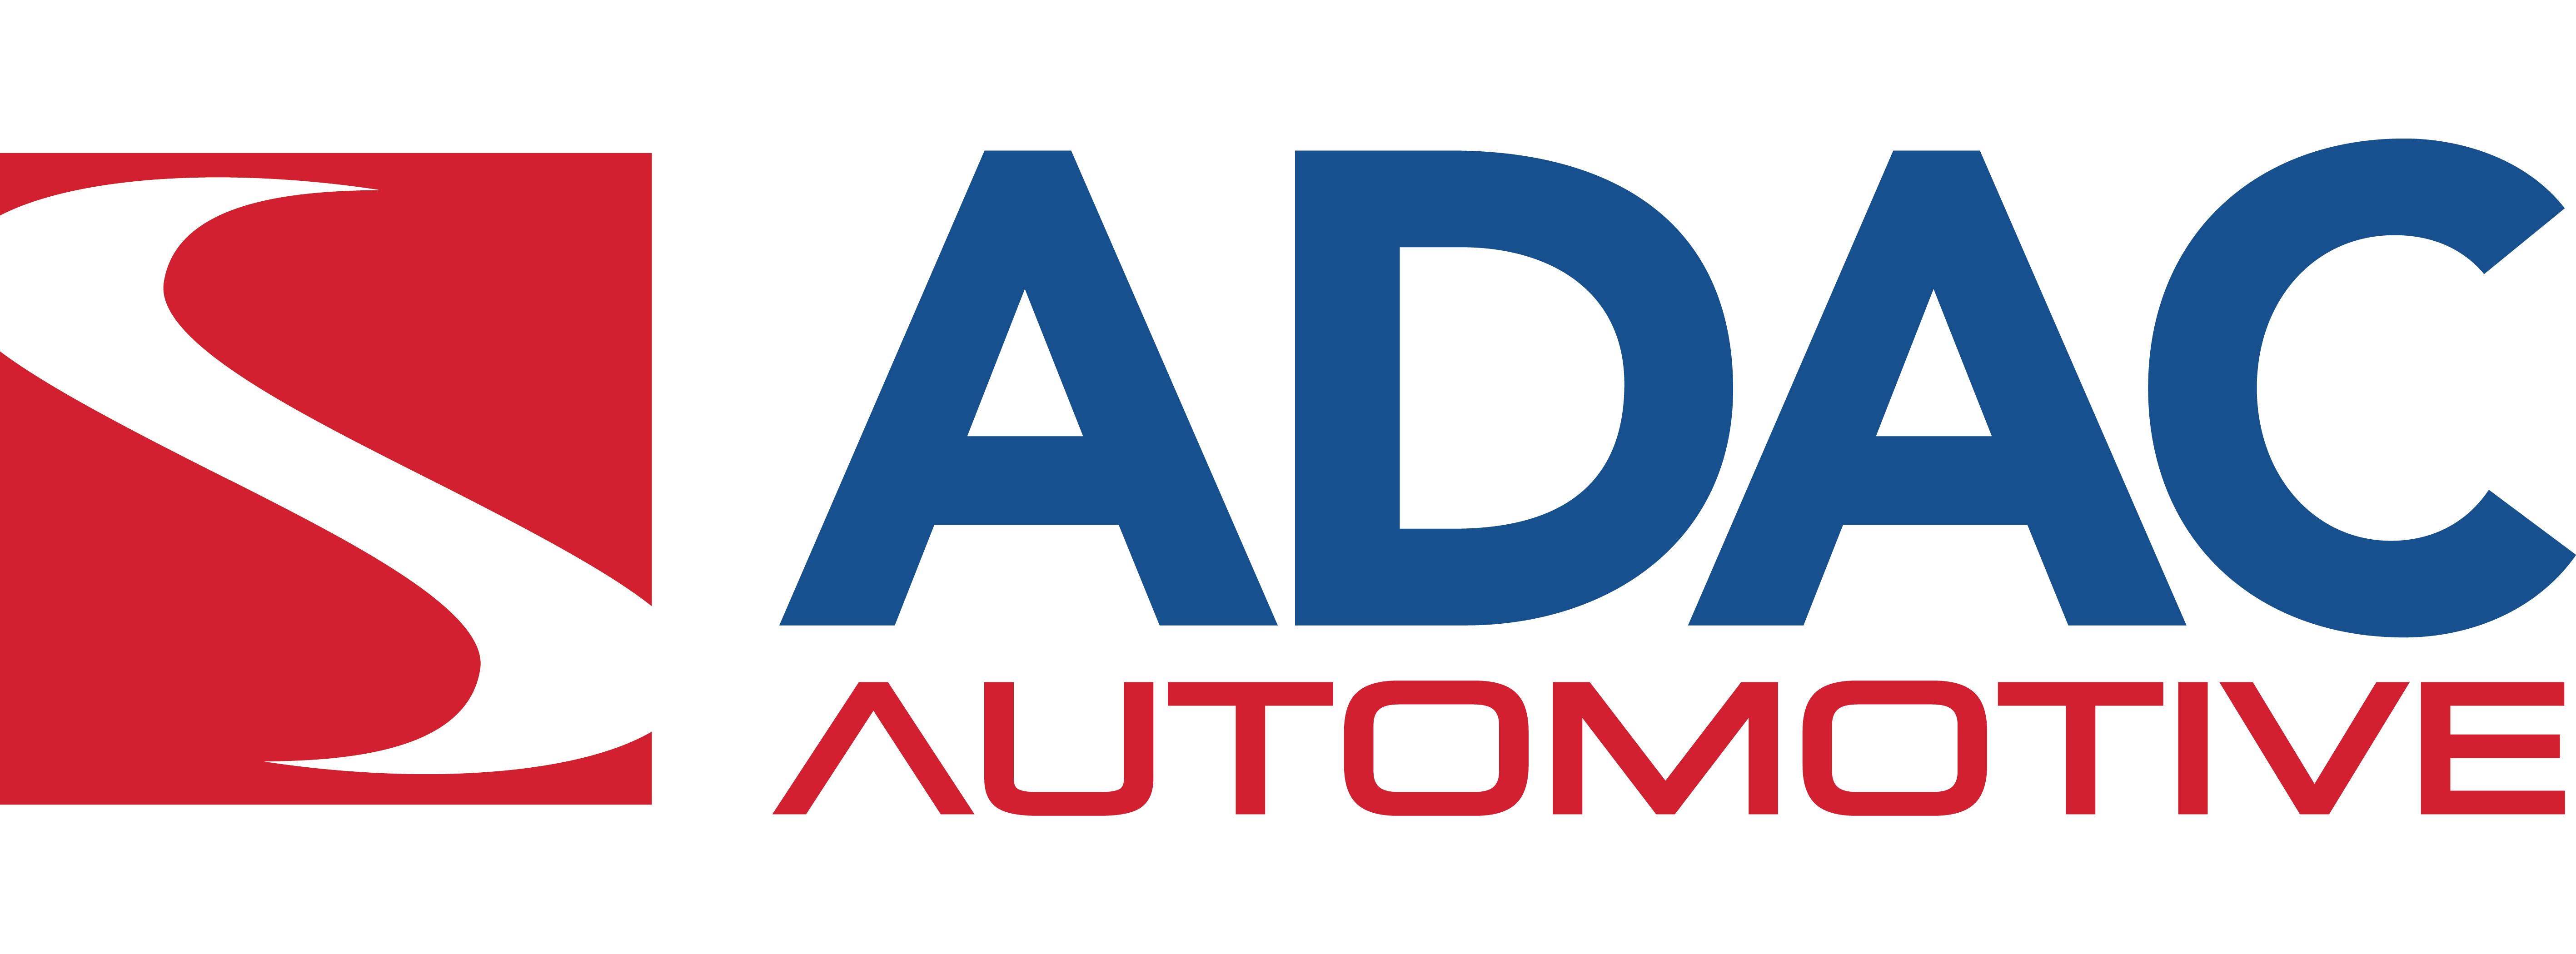 ADAC Logo Vector